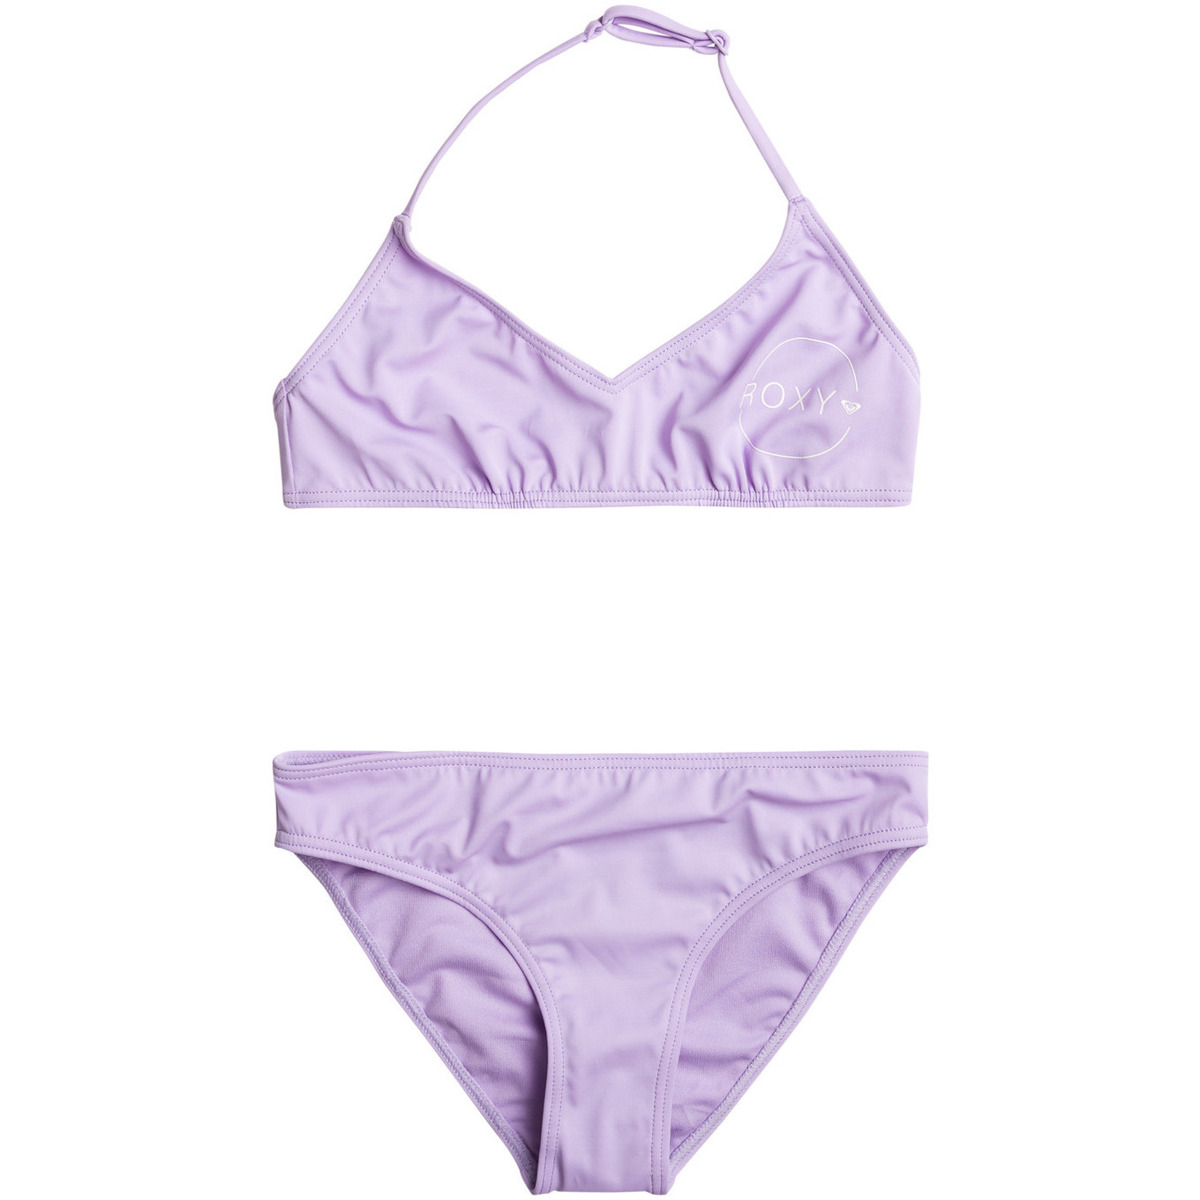 Roxy Violet Swim For Days uuJeW8KX